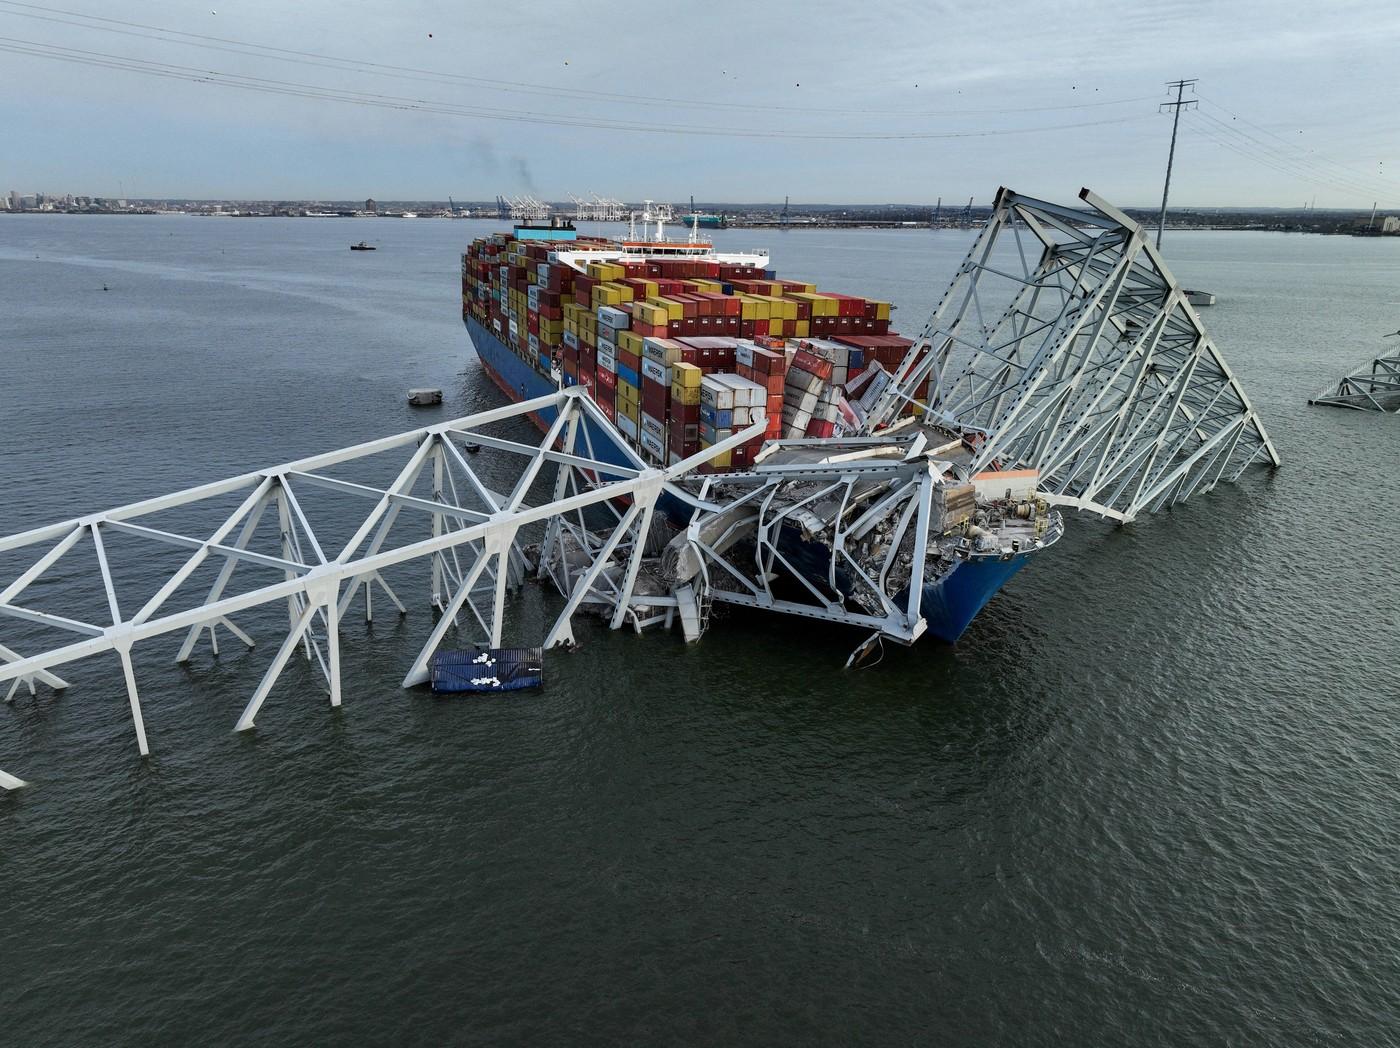 Podul prăbuşit în Baltimore: Șase persoane, presupuse moarte. Blackout total la bordul navei înainte de impact